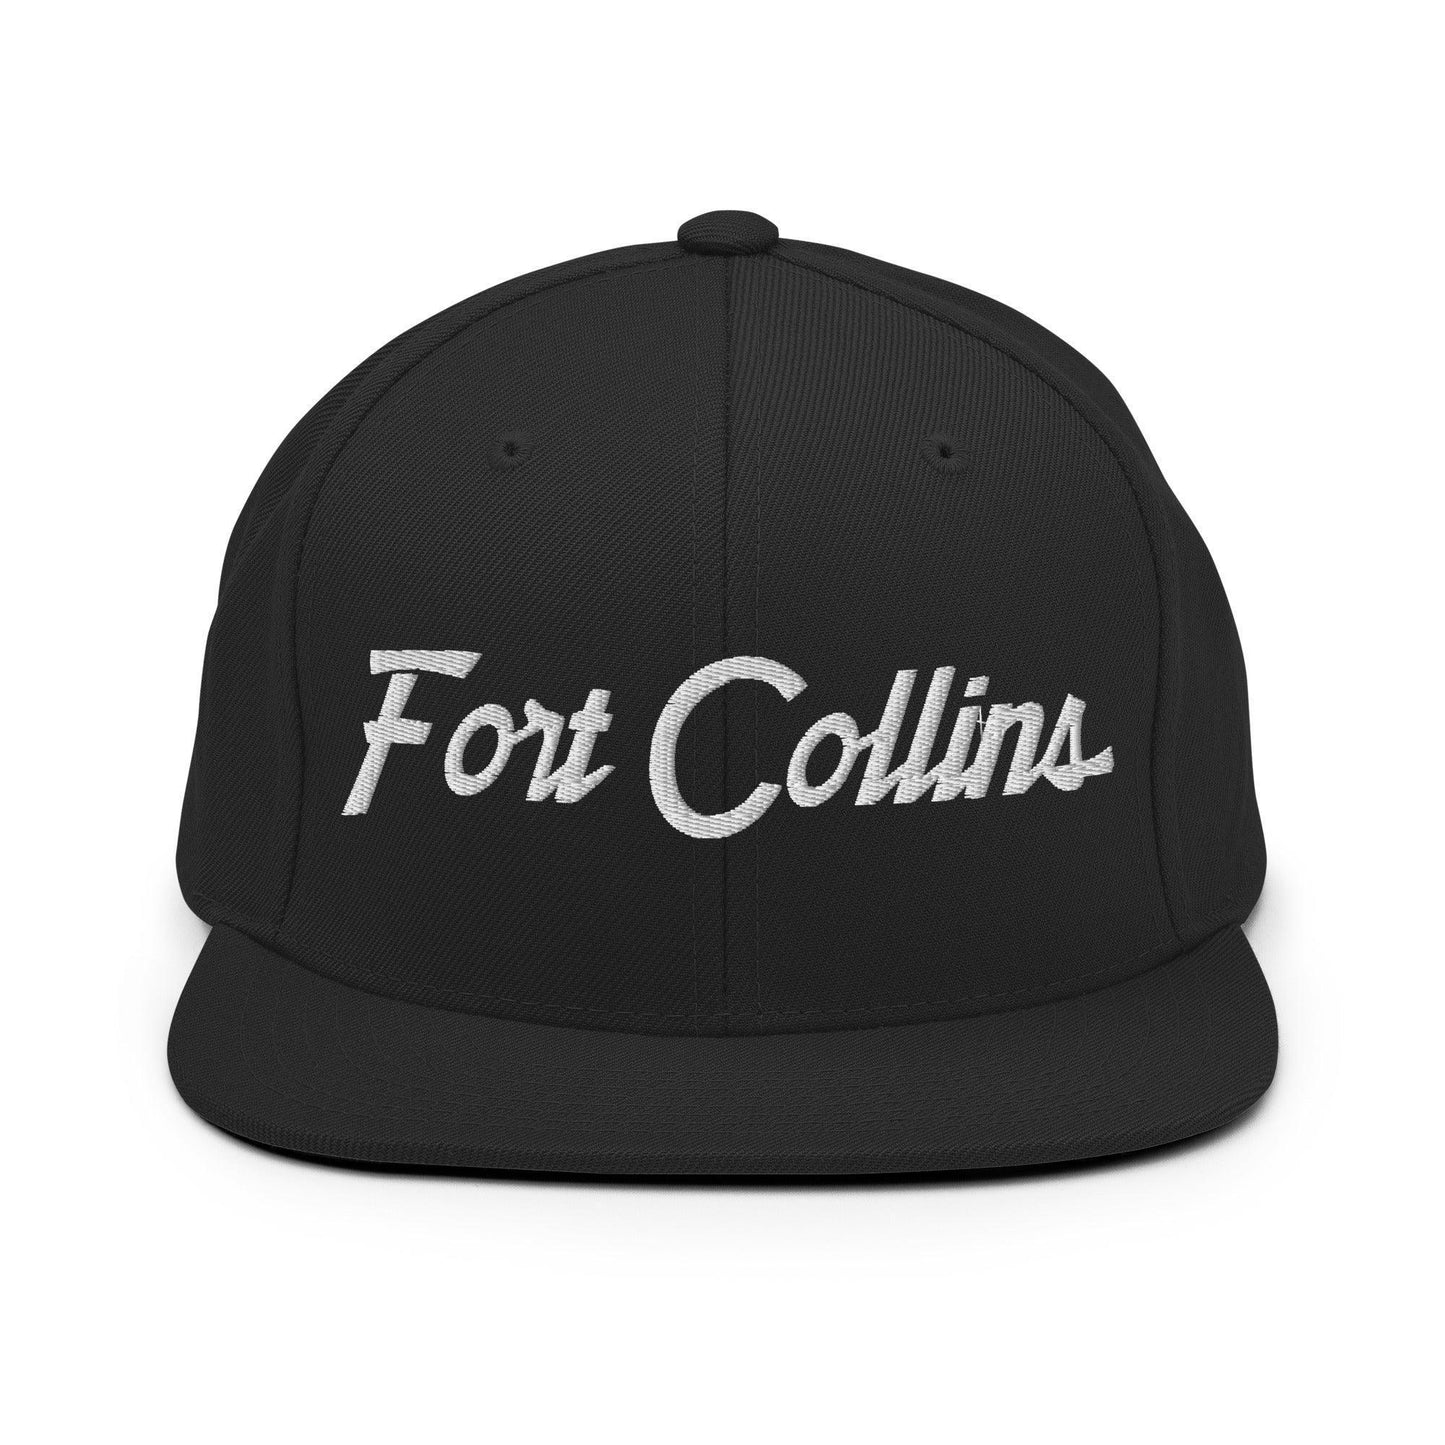 Fort Collins Script Snapback Hat Black